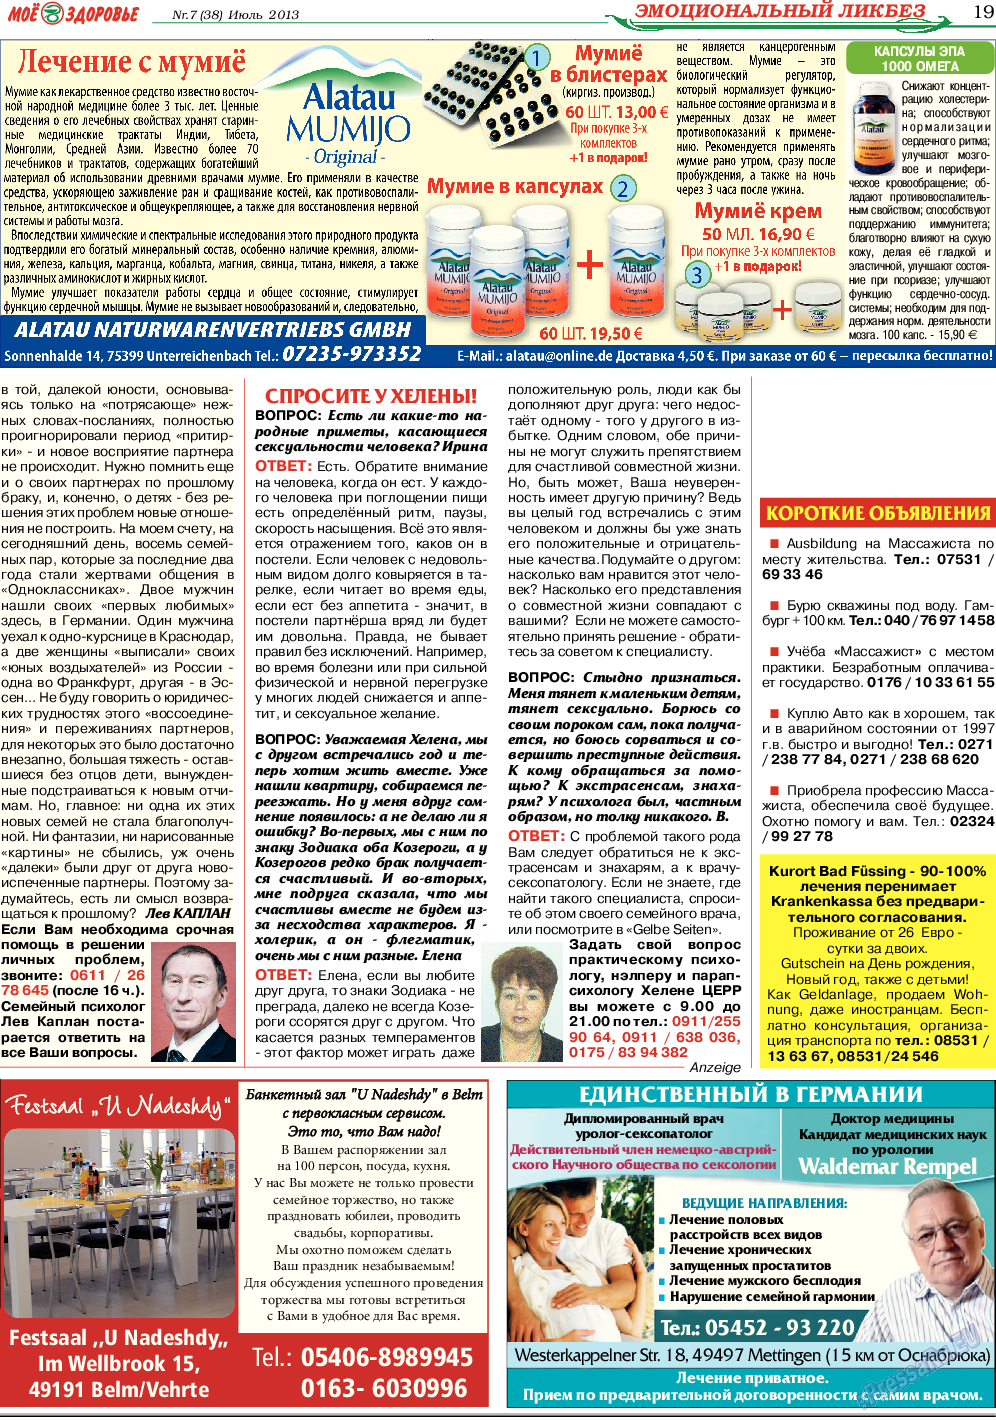 Кругозор (газета). 2013 год, номер 7, стр. 19